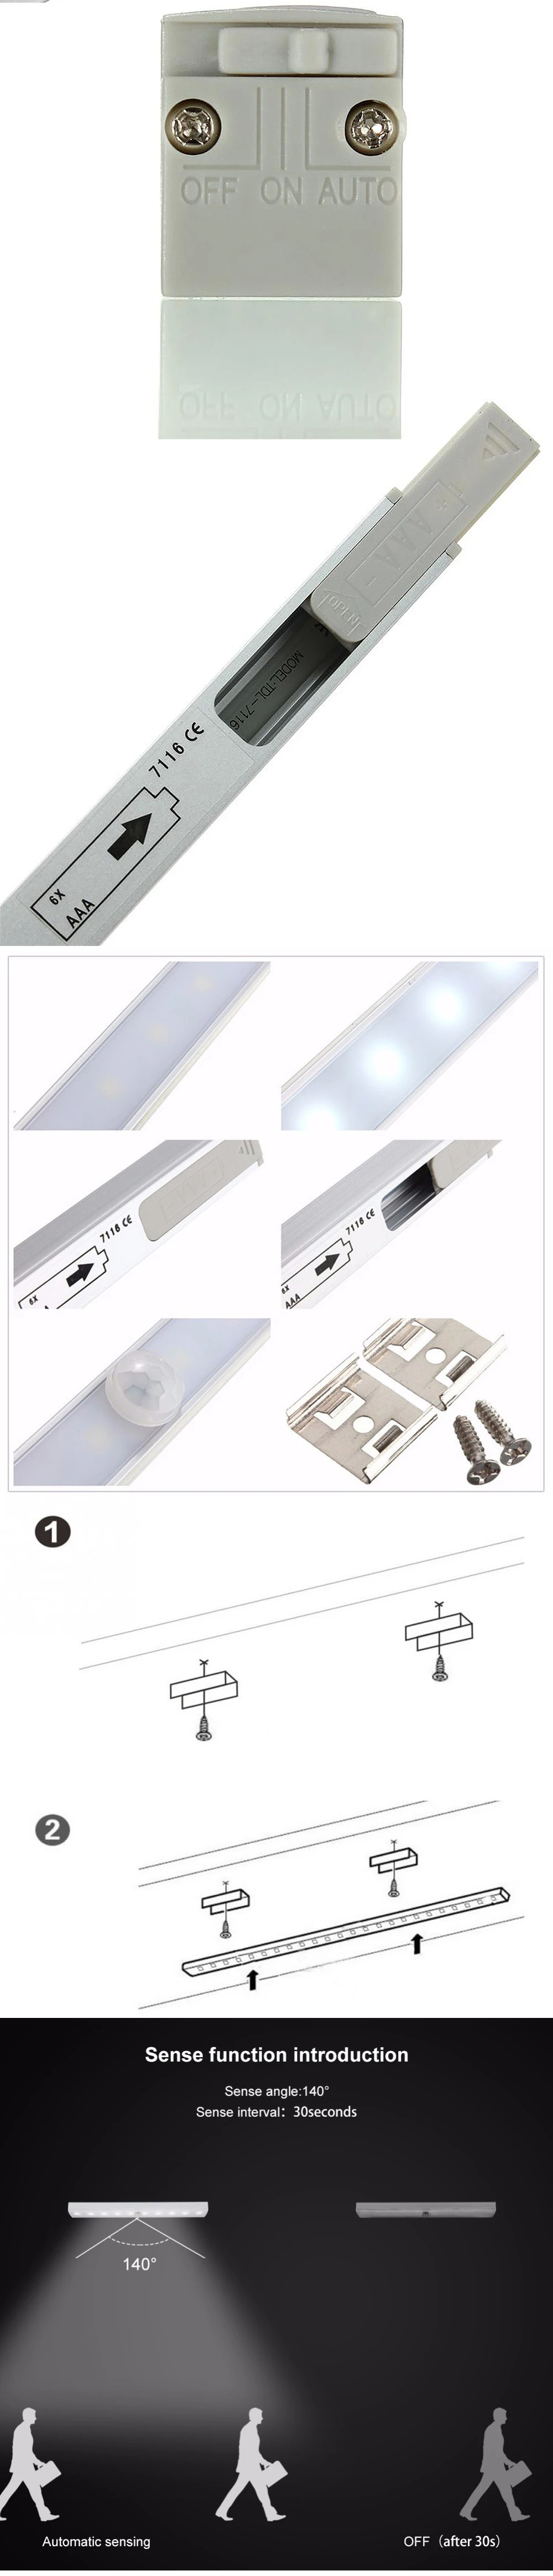 ZjRight энергосберегающий автоматический датчик движения 20 светодиодный светильник беспроводной PIR шкаф для кухни спальни шкаф для помещений лестница ночной Светильник